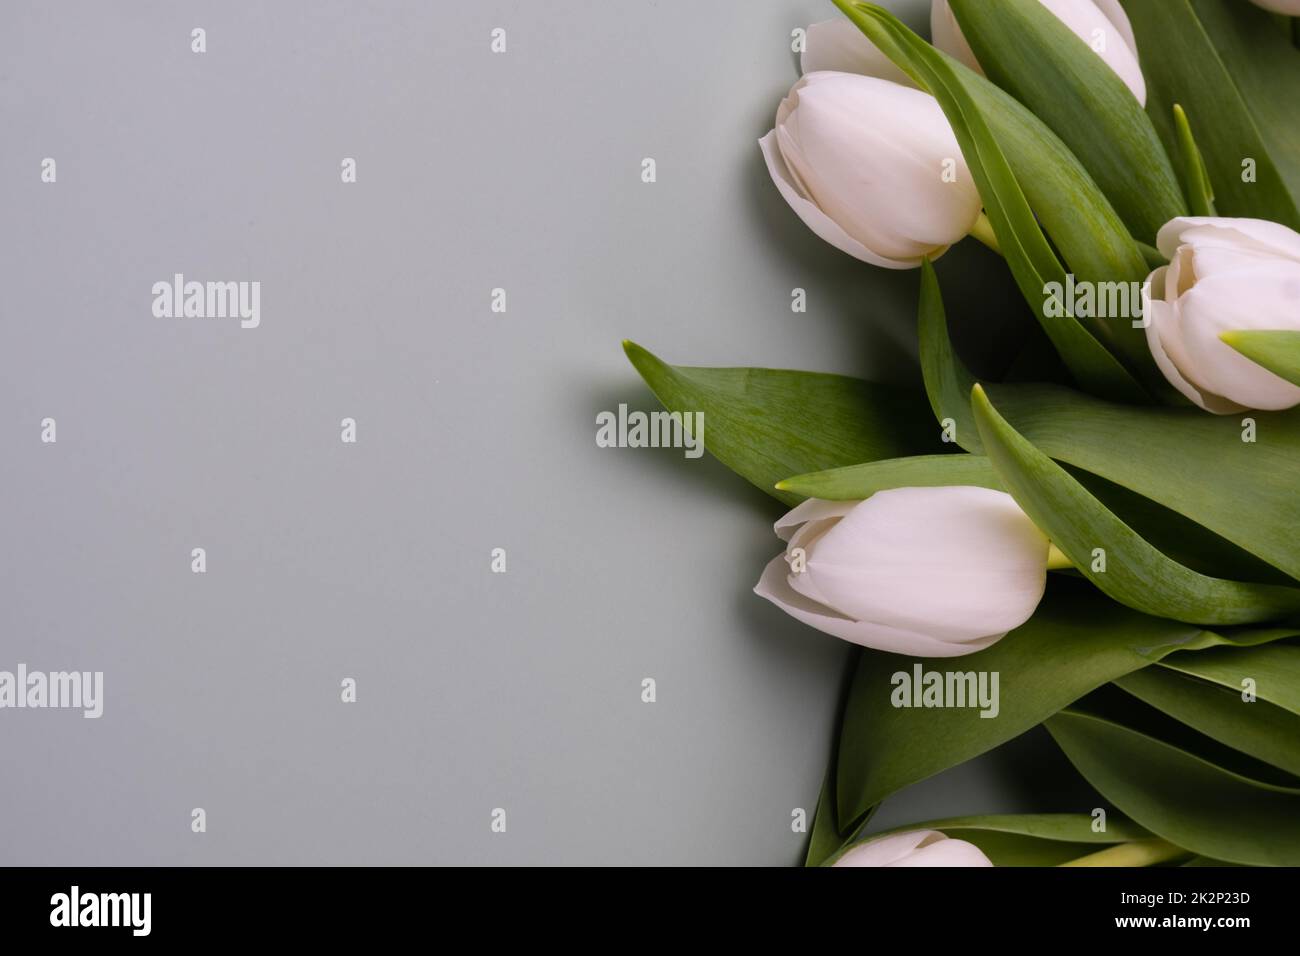 Tulipani bianchi su sfondo grigio chiaro. Mockup per il biglietto d'auguri di primavera. Foto Stock